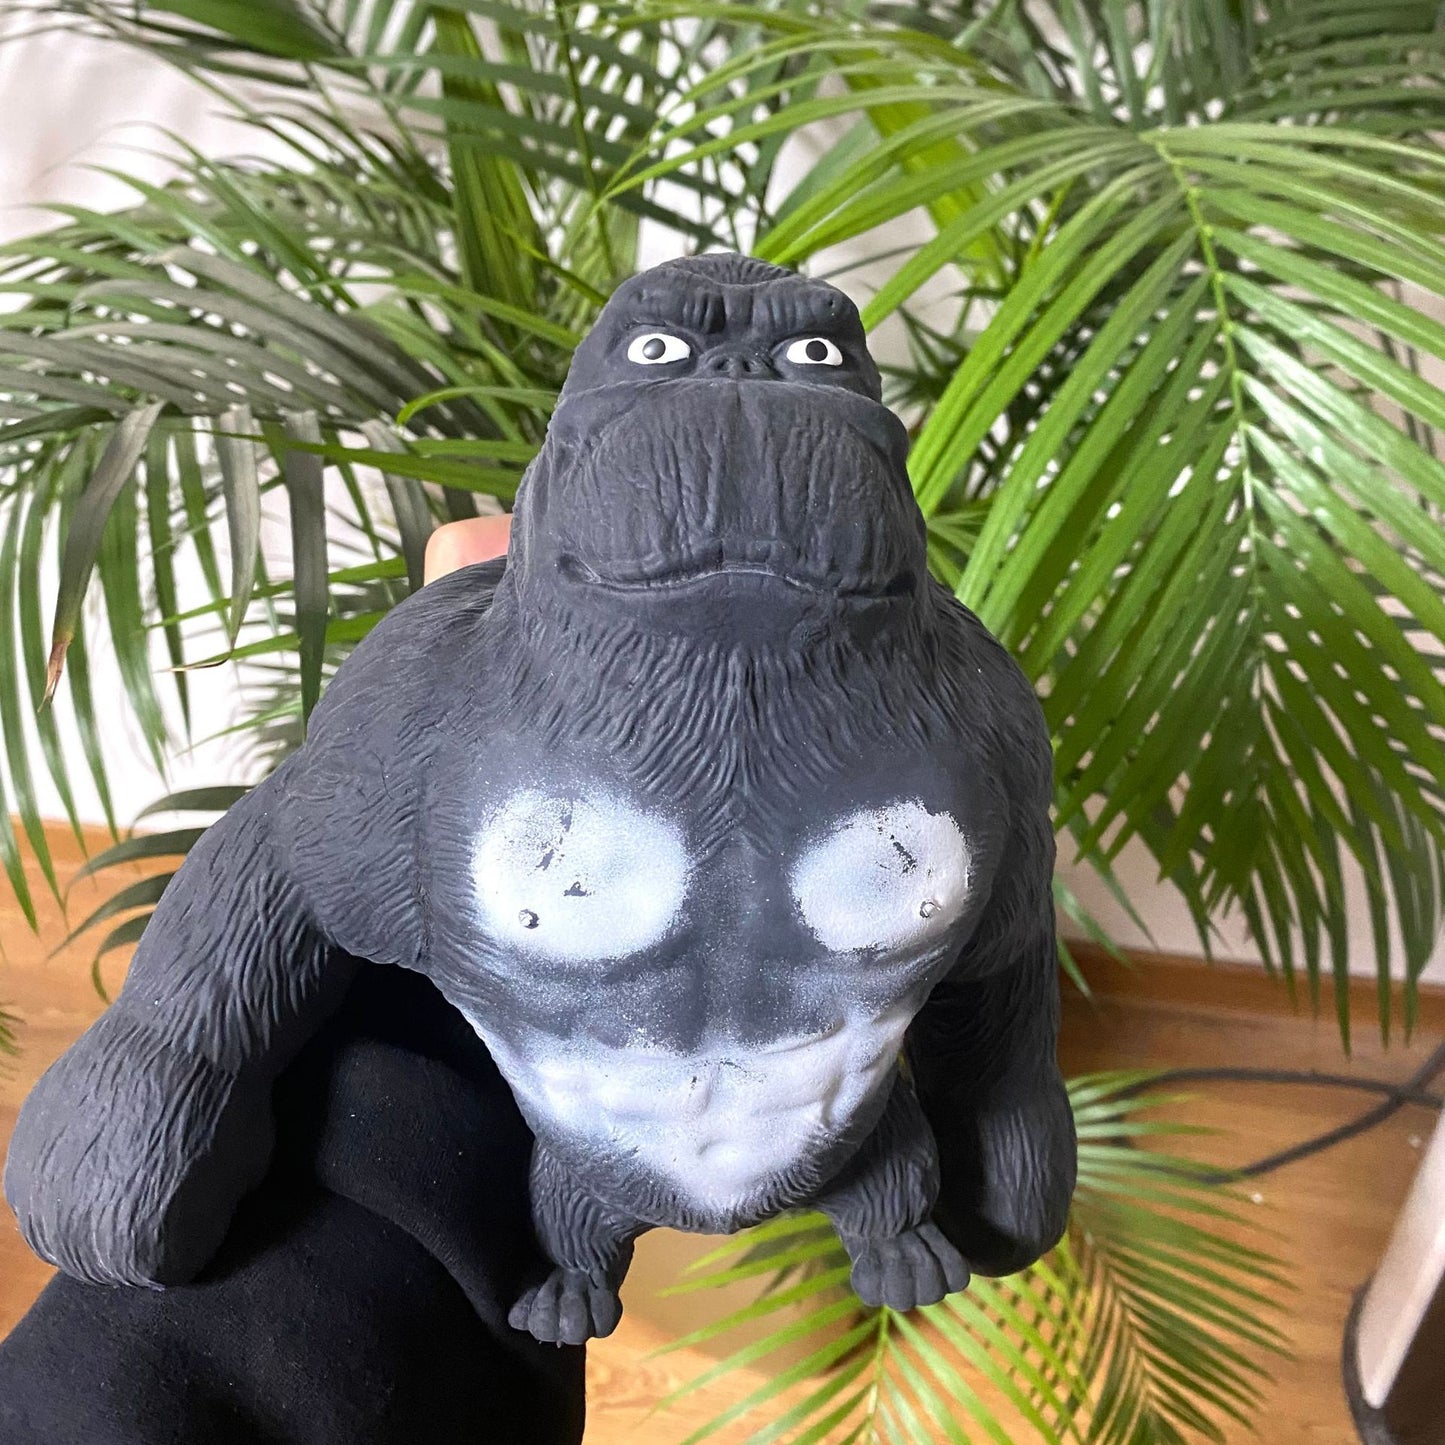 Toy Gorilla